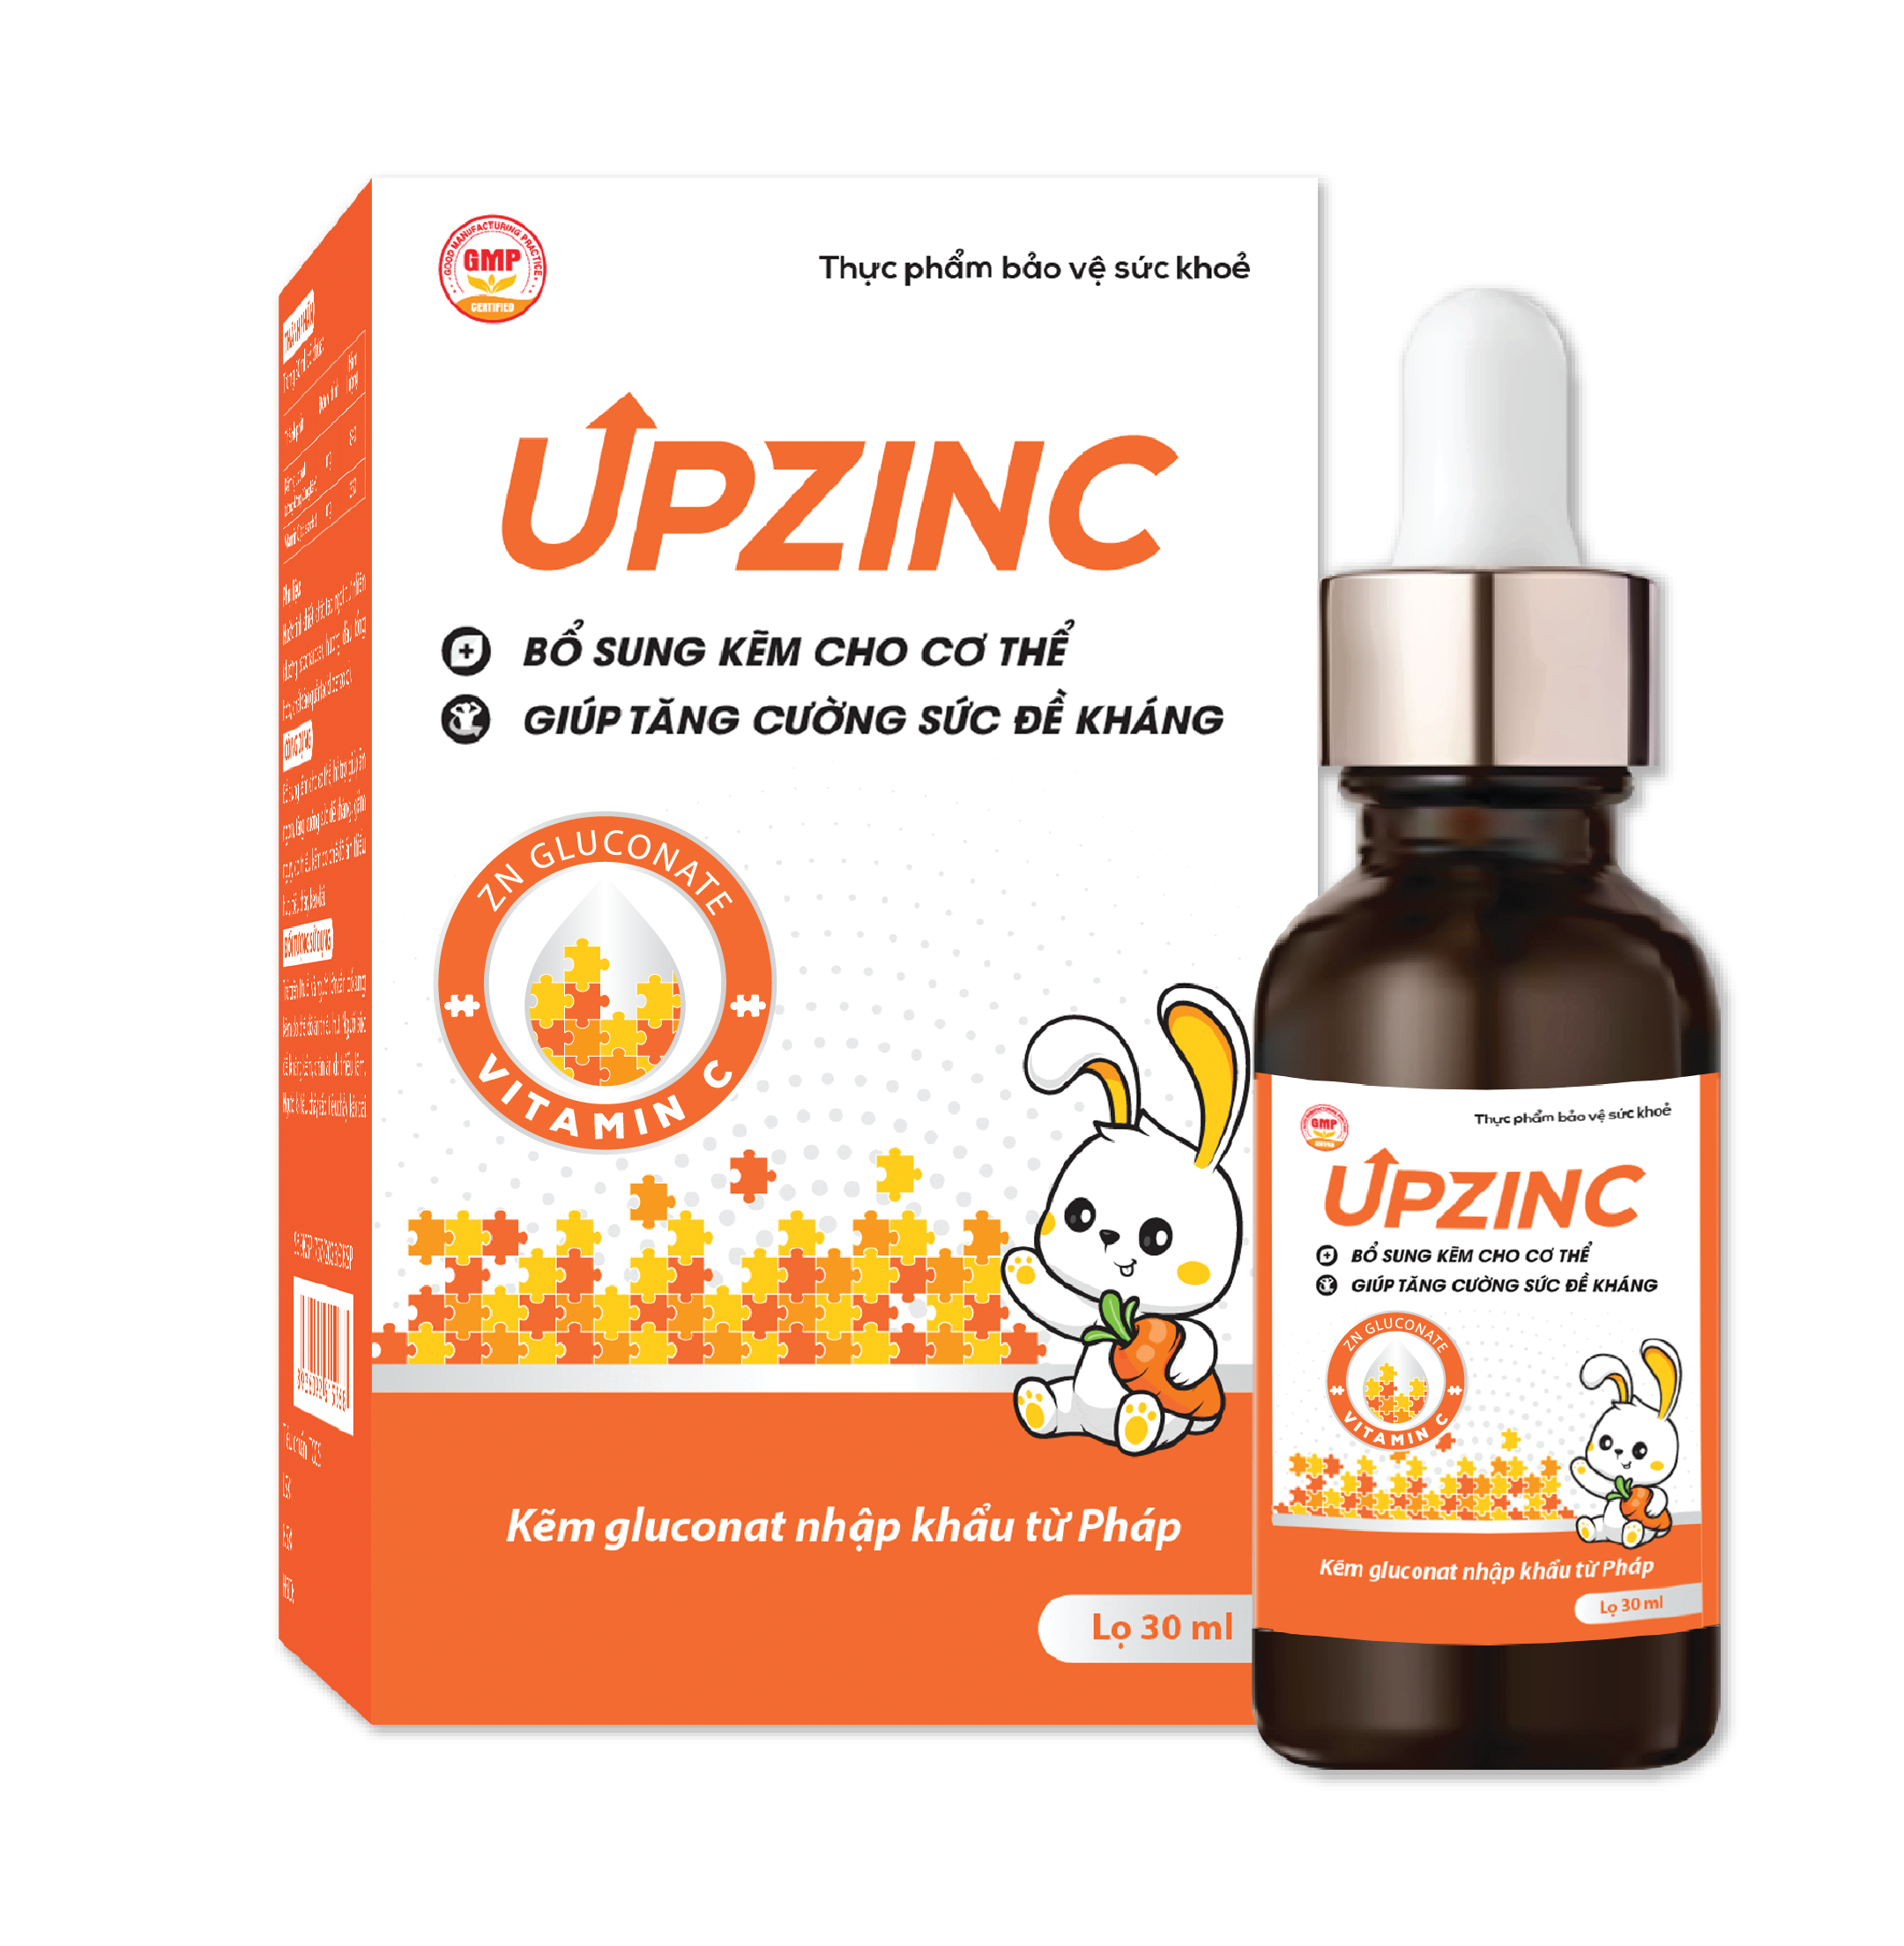 Thực phẩm bảo vệ sức khỏe UPZINC